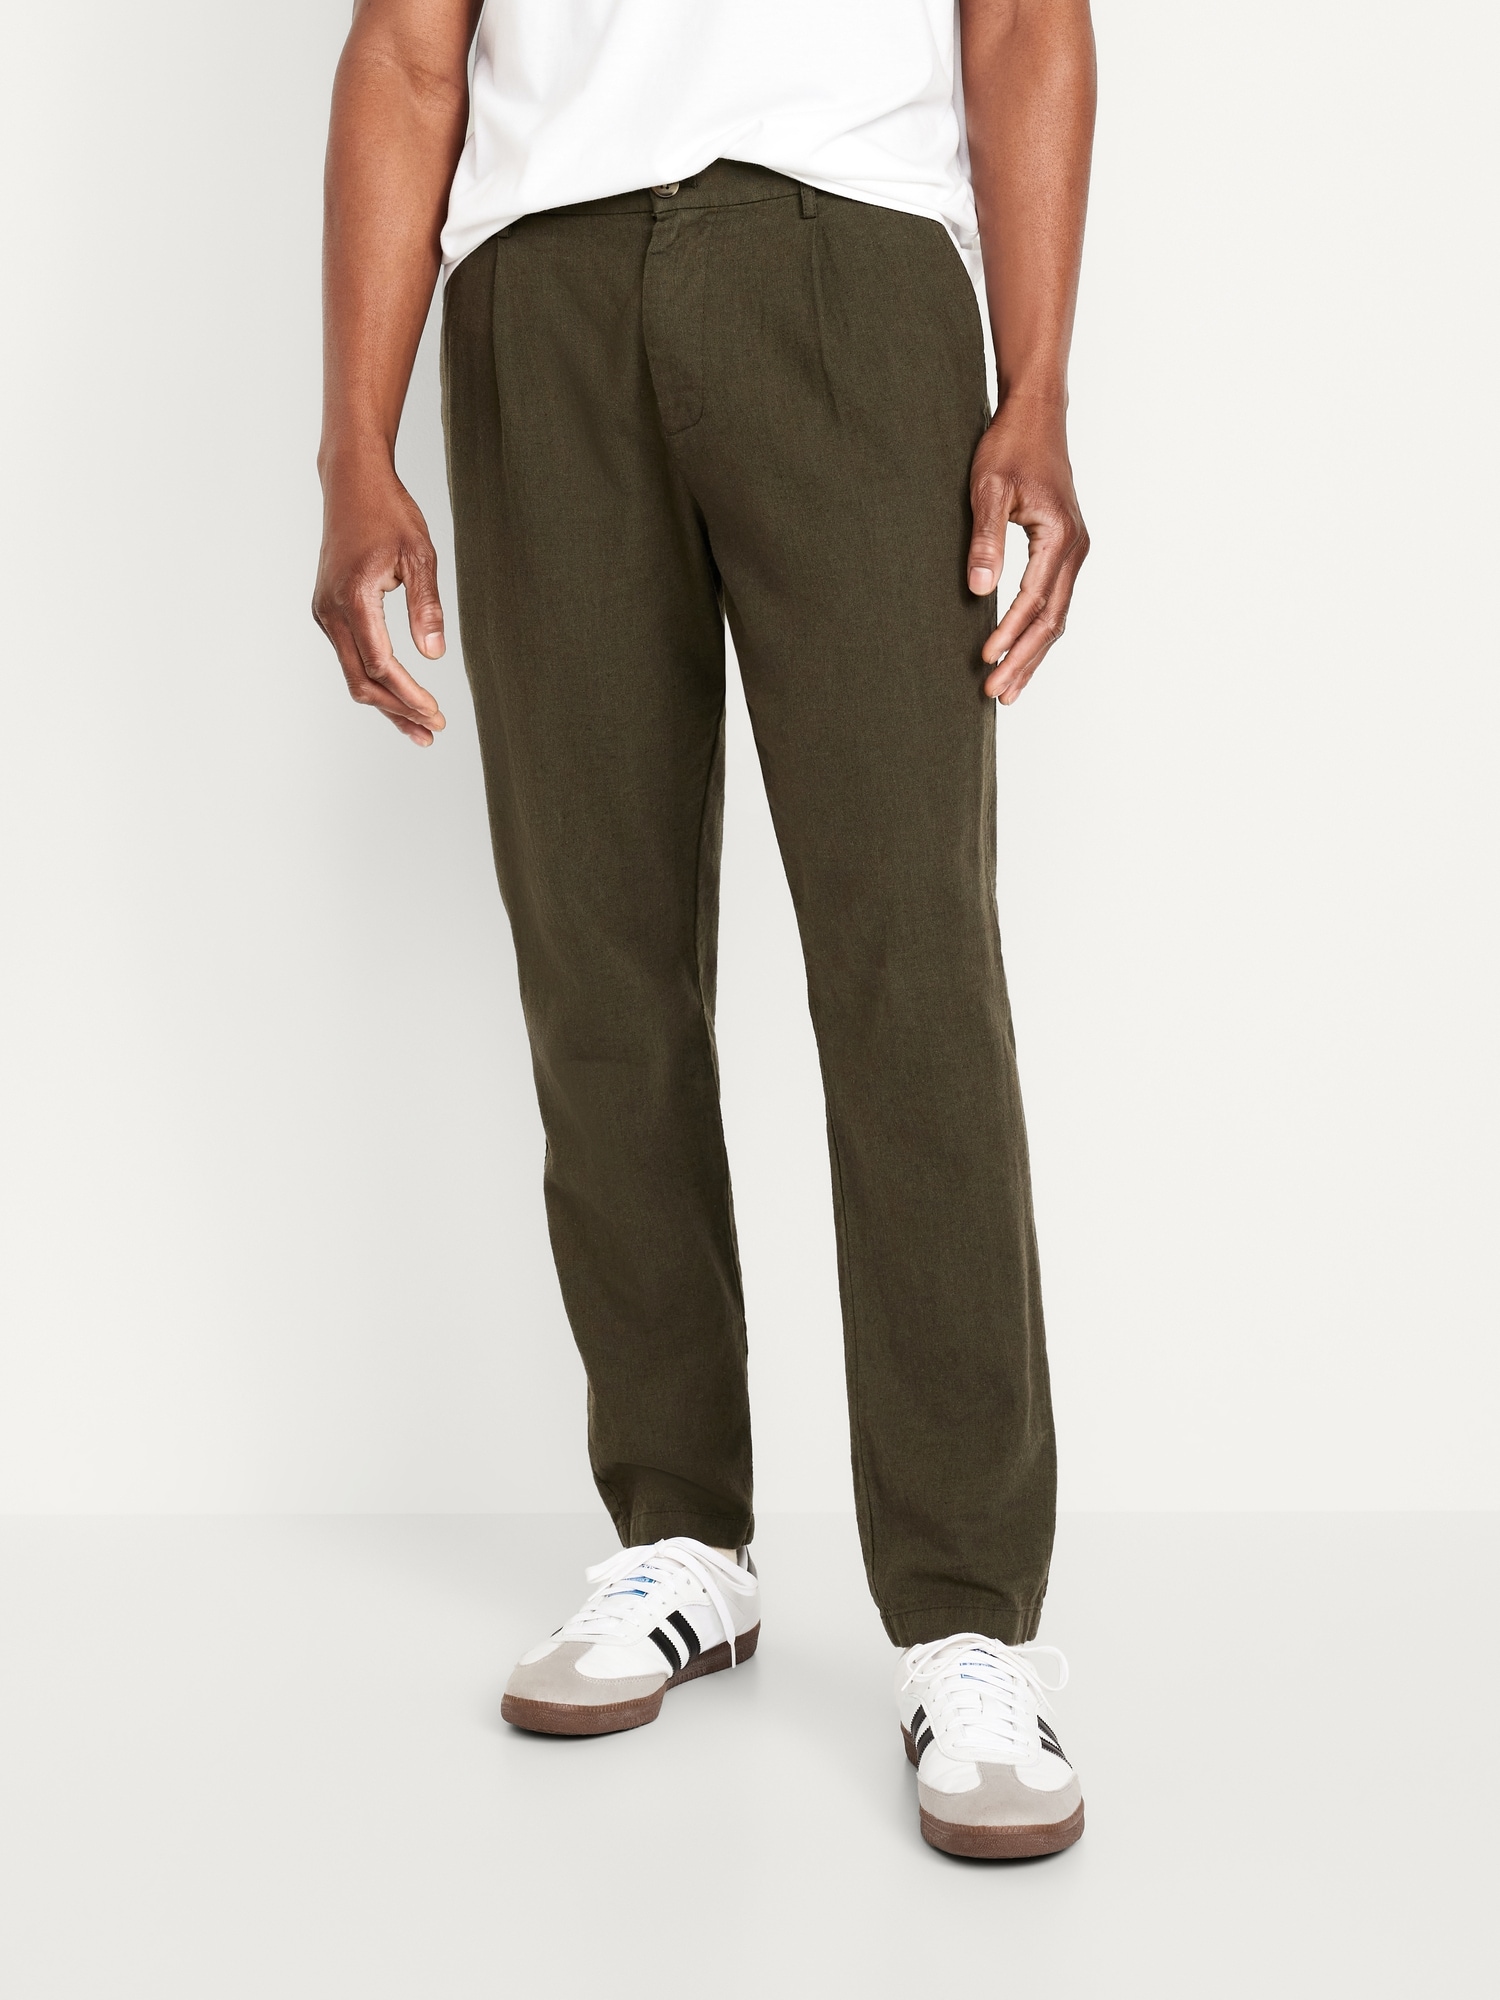 Ankle Fit Suit Pants | Men Suit Pants Ankle Length – Acapparelstore